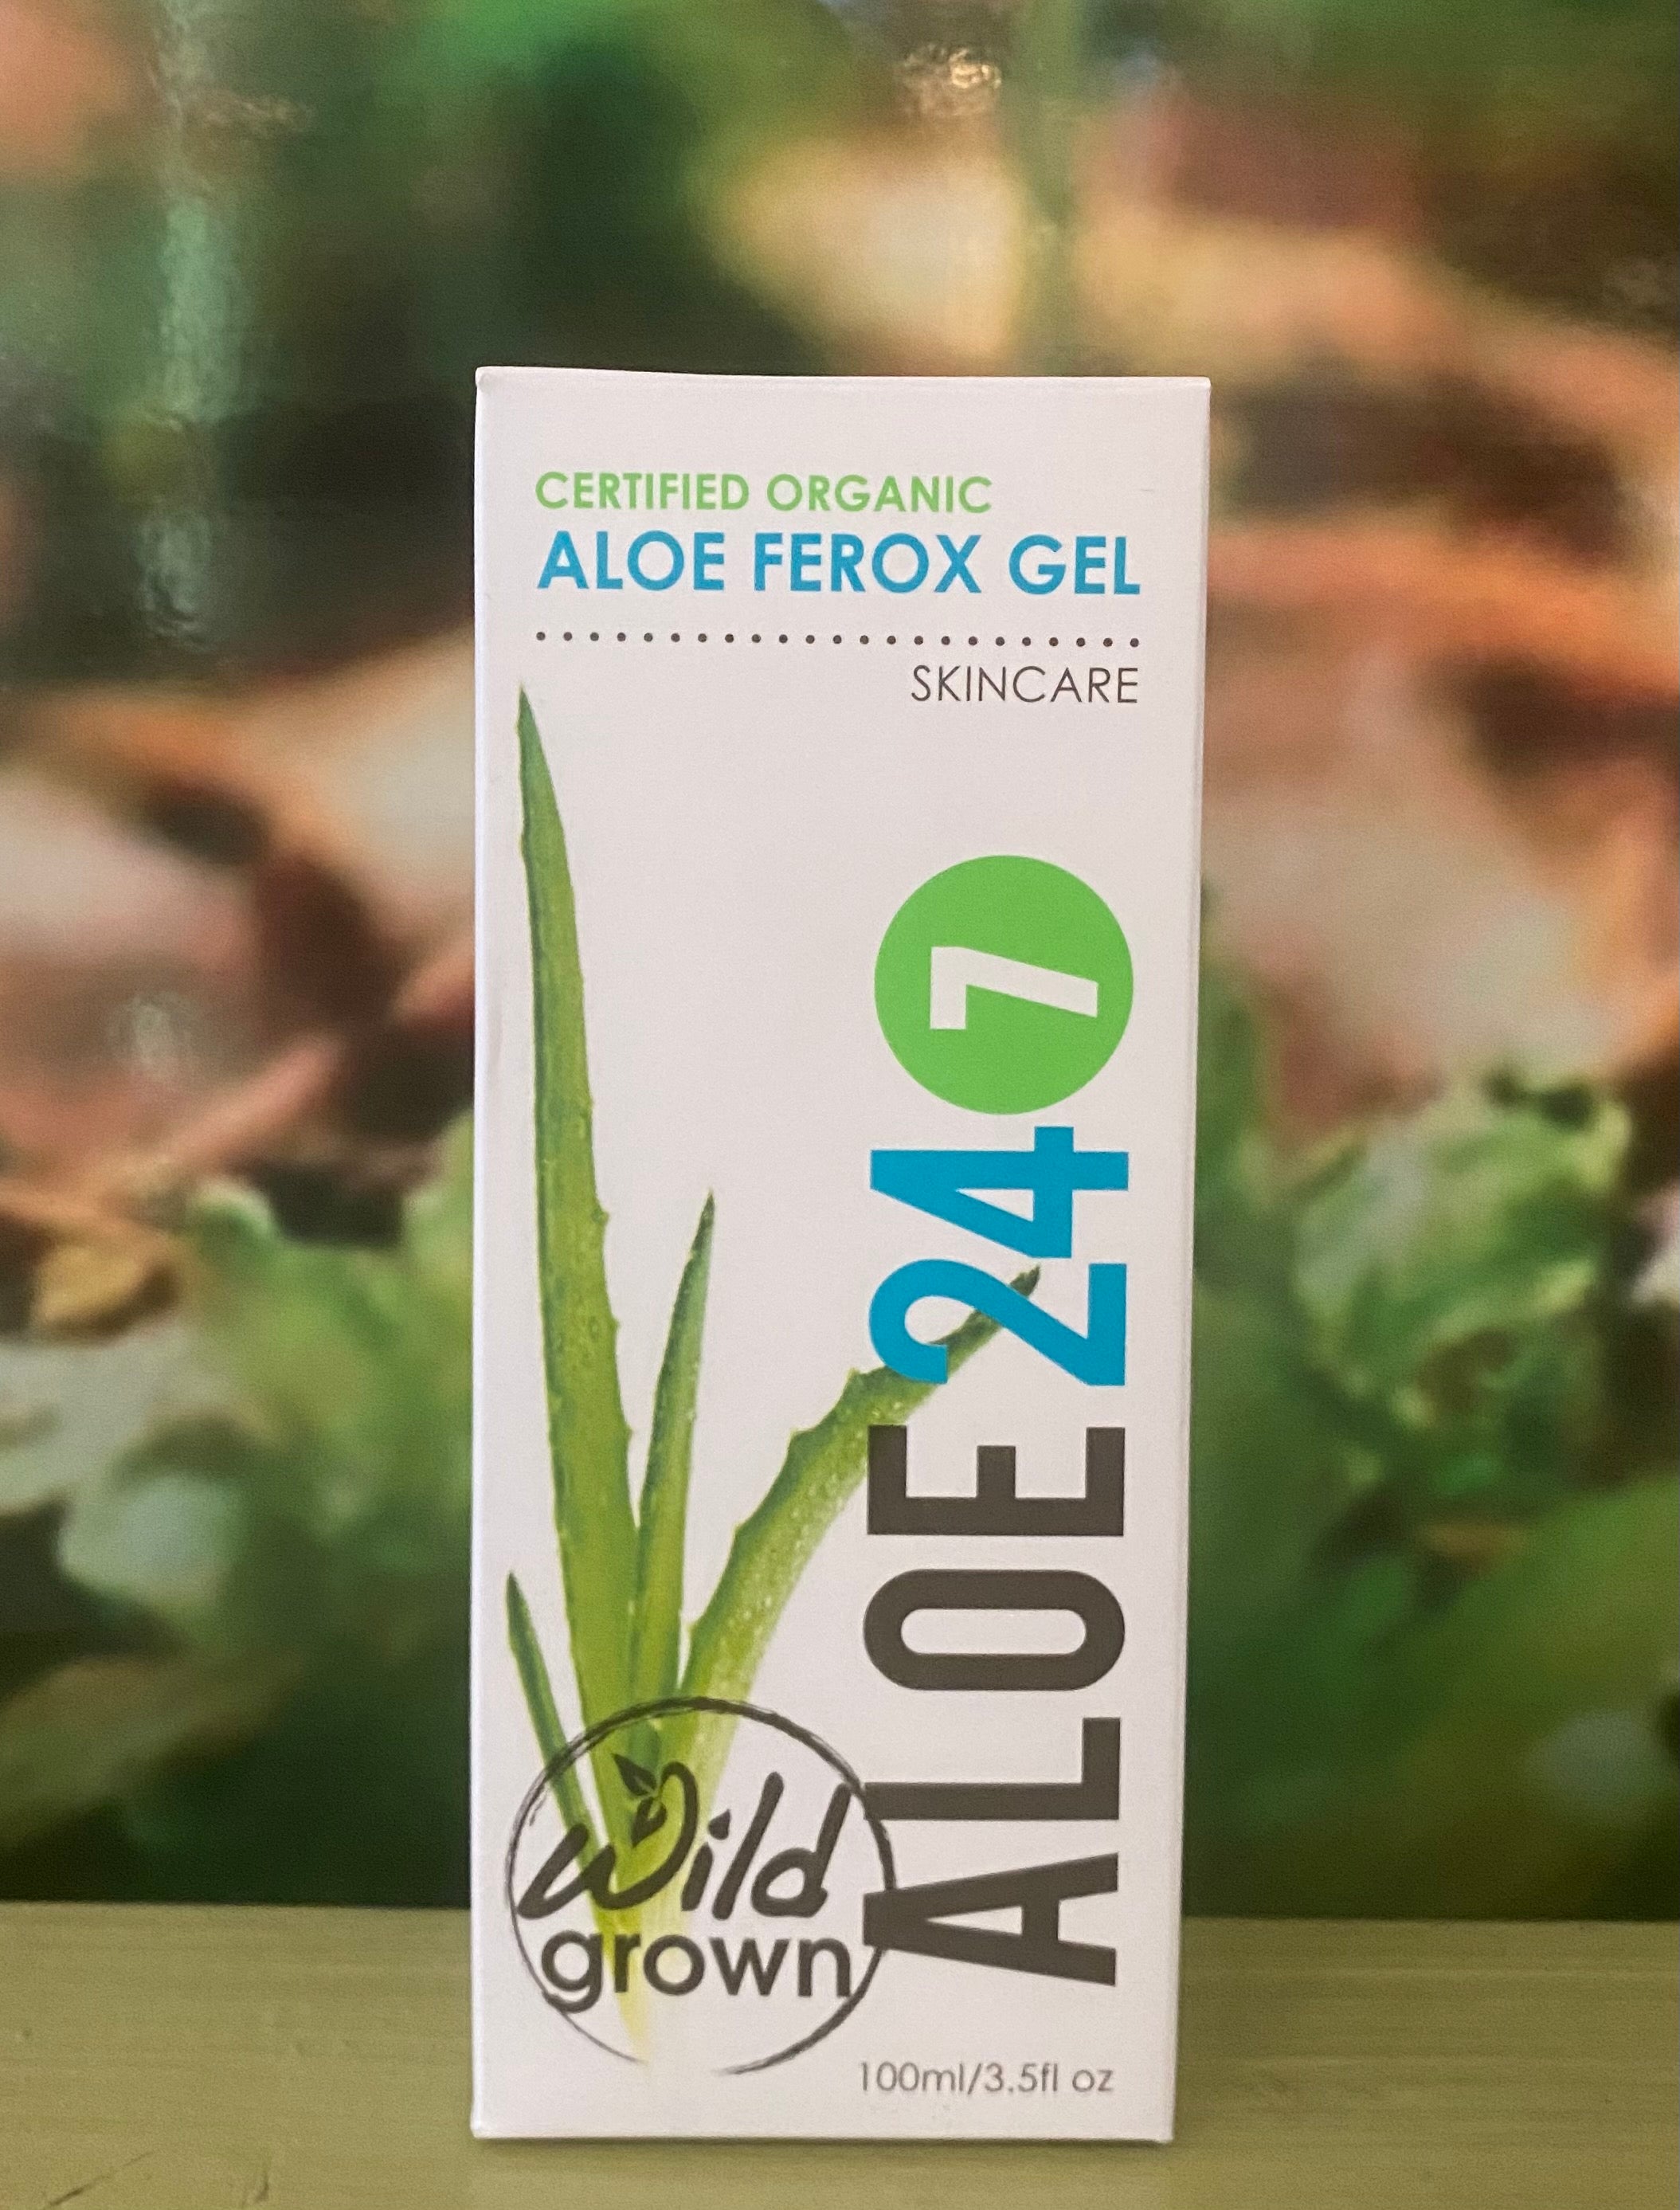 Aloe 24/7 Certified Organic Aloe Ferox Gel 100ml